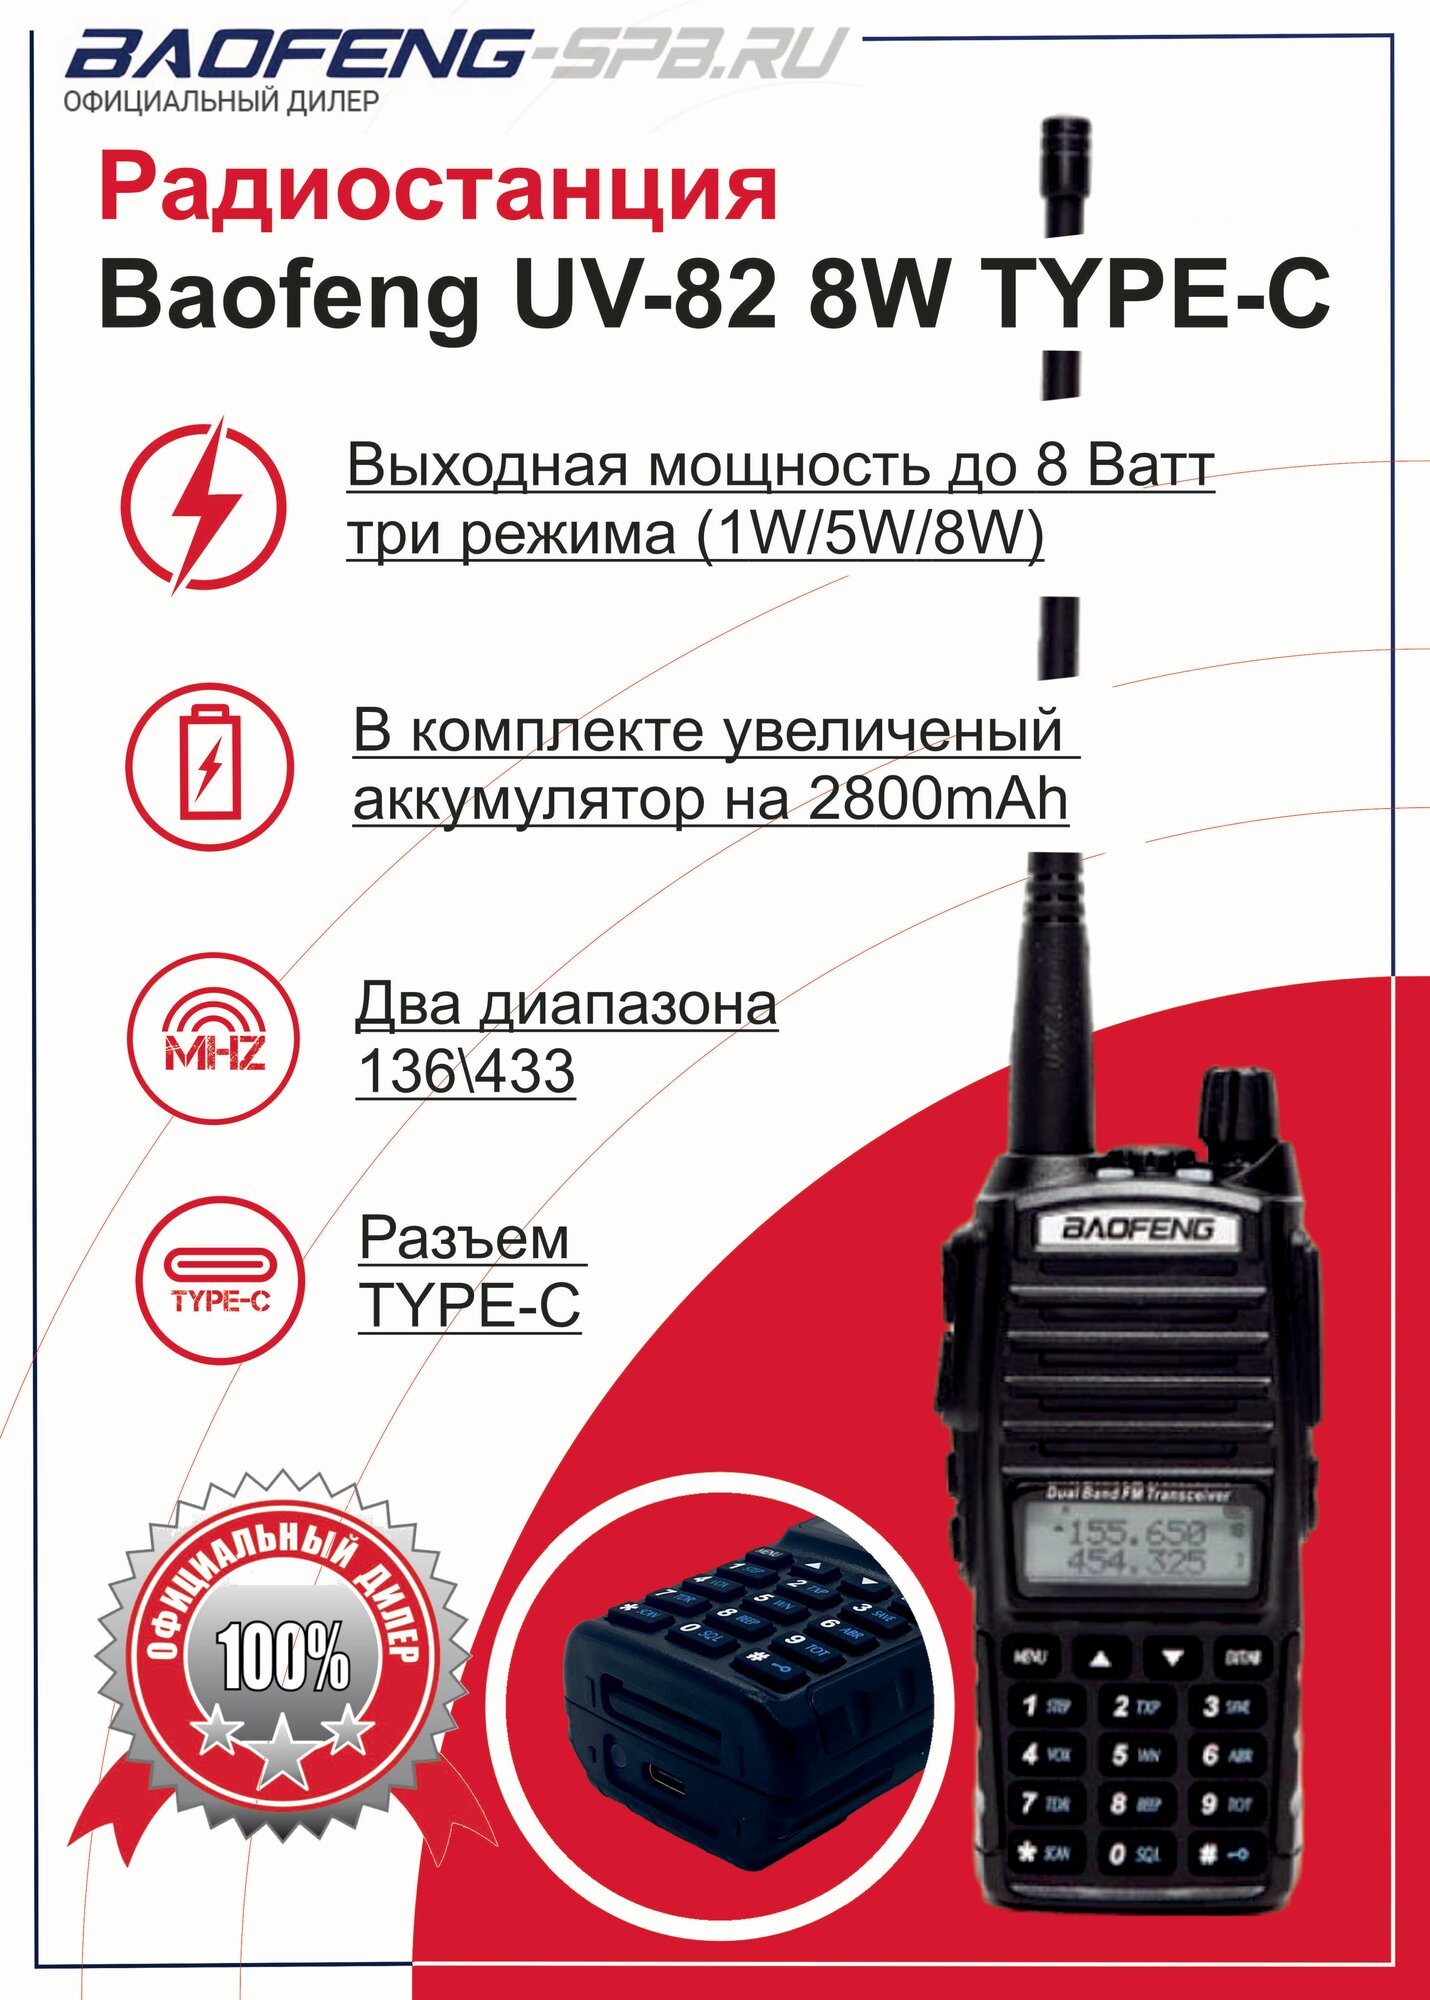 Рация Baofeng UV-82 8W портативная мощность 8 Вт TYPE-C